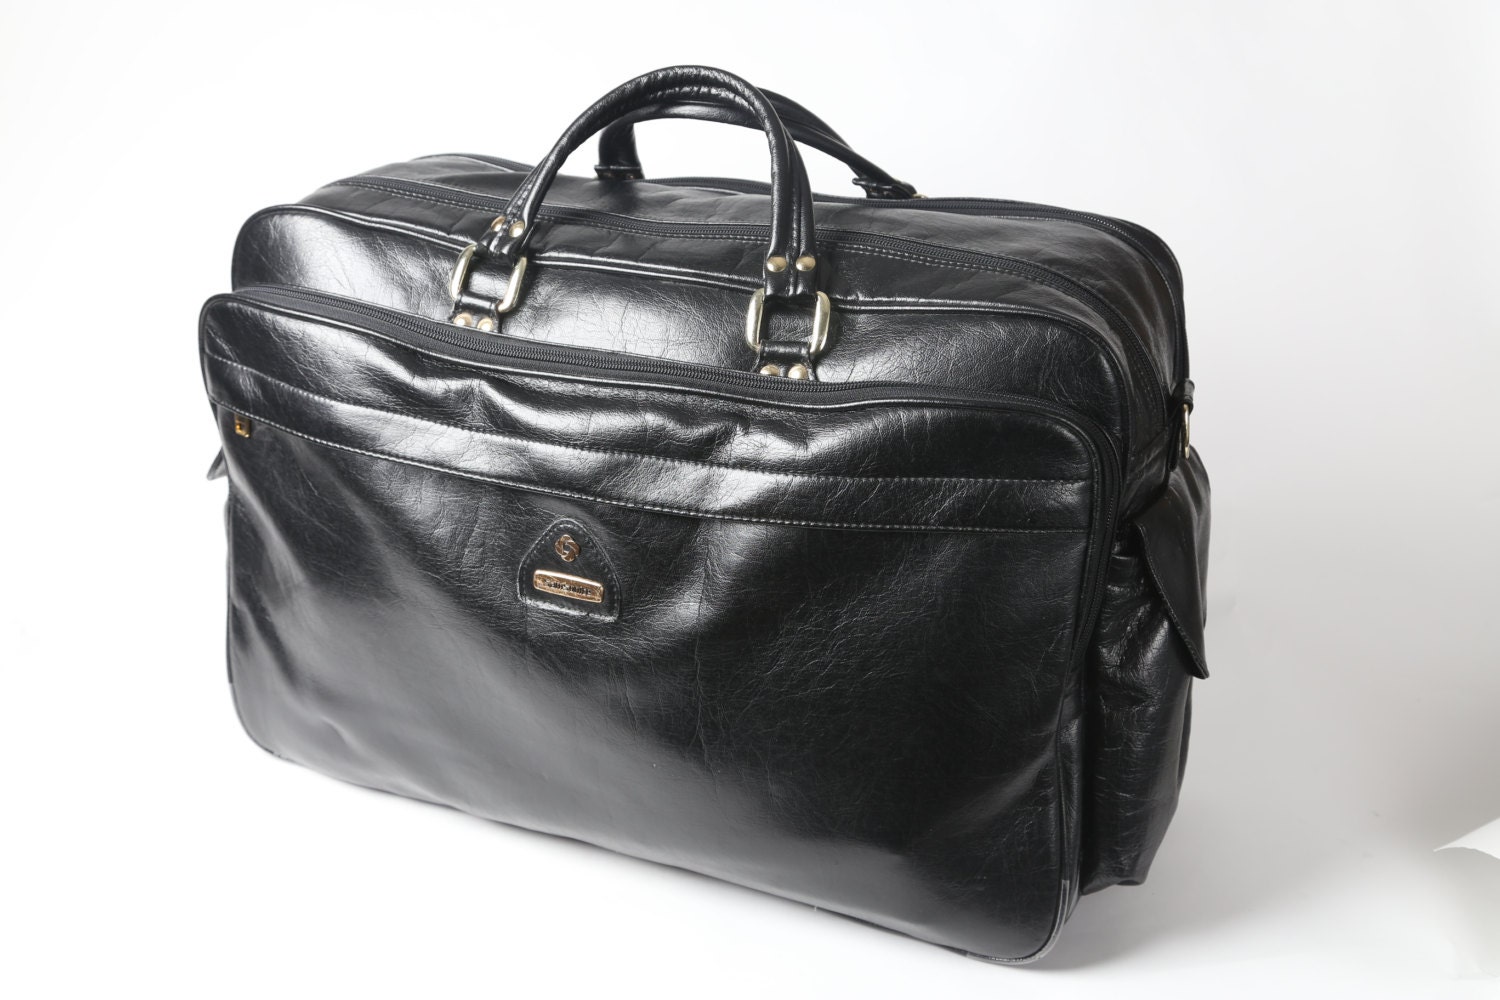 Black Samsonite Bag Leather-Look Vintage Luggage with Gold